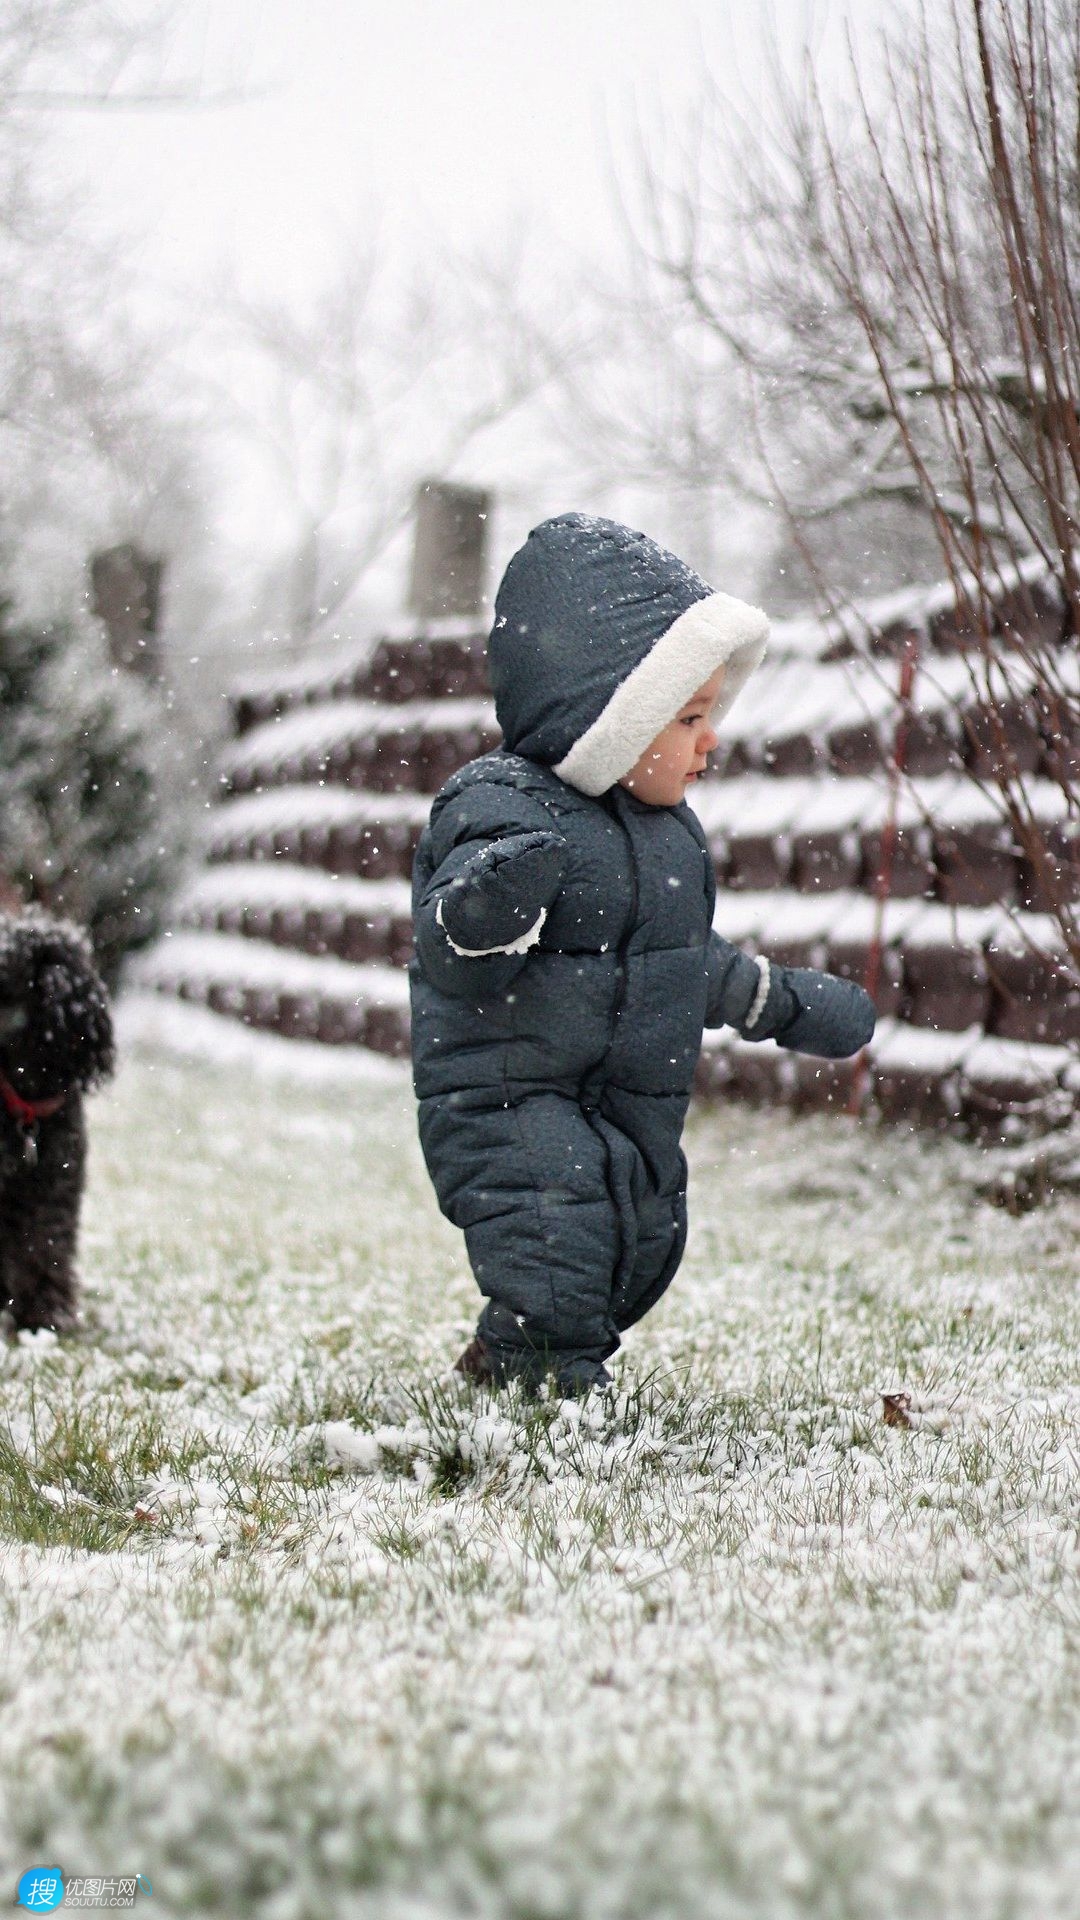 草地上 欧美小孩 连衣裤 狮子狗 孩子手机壁纸图片 下雪的冬天